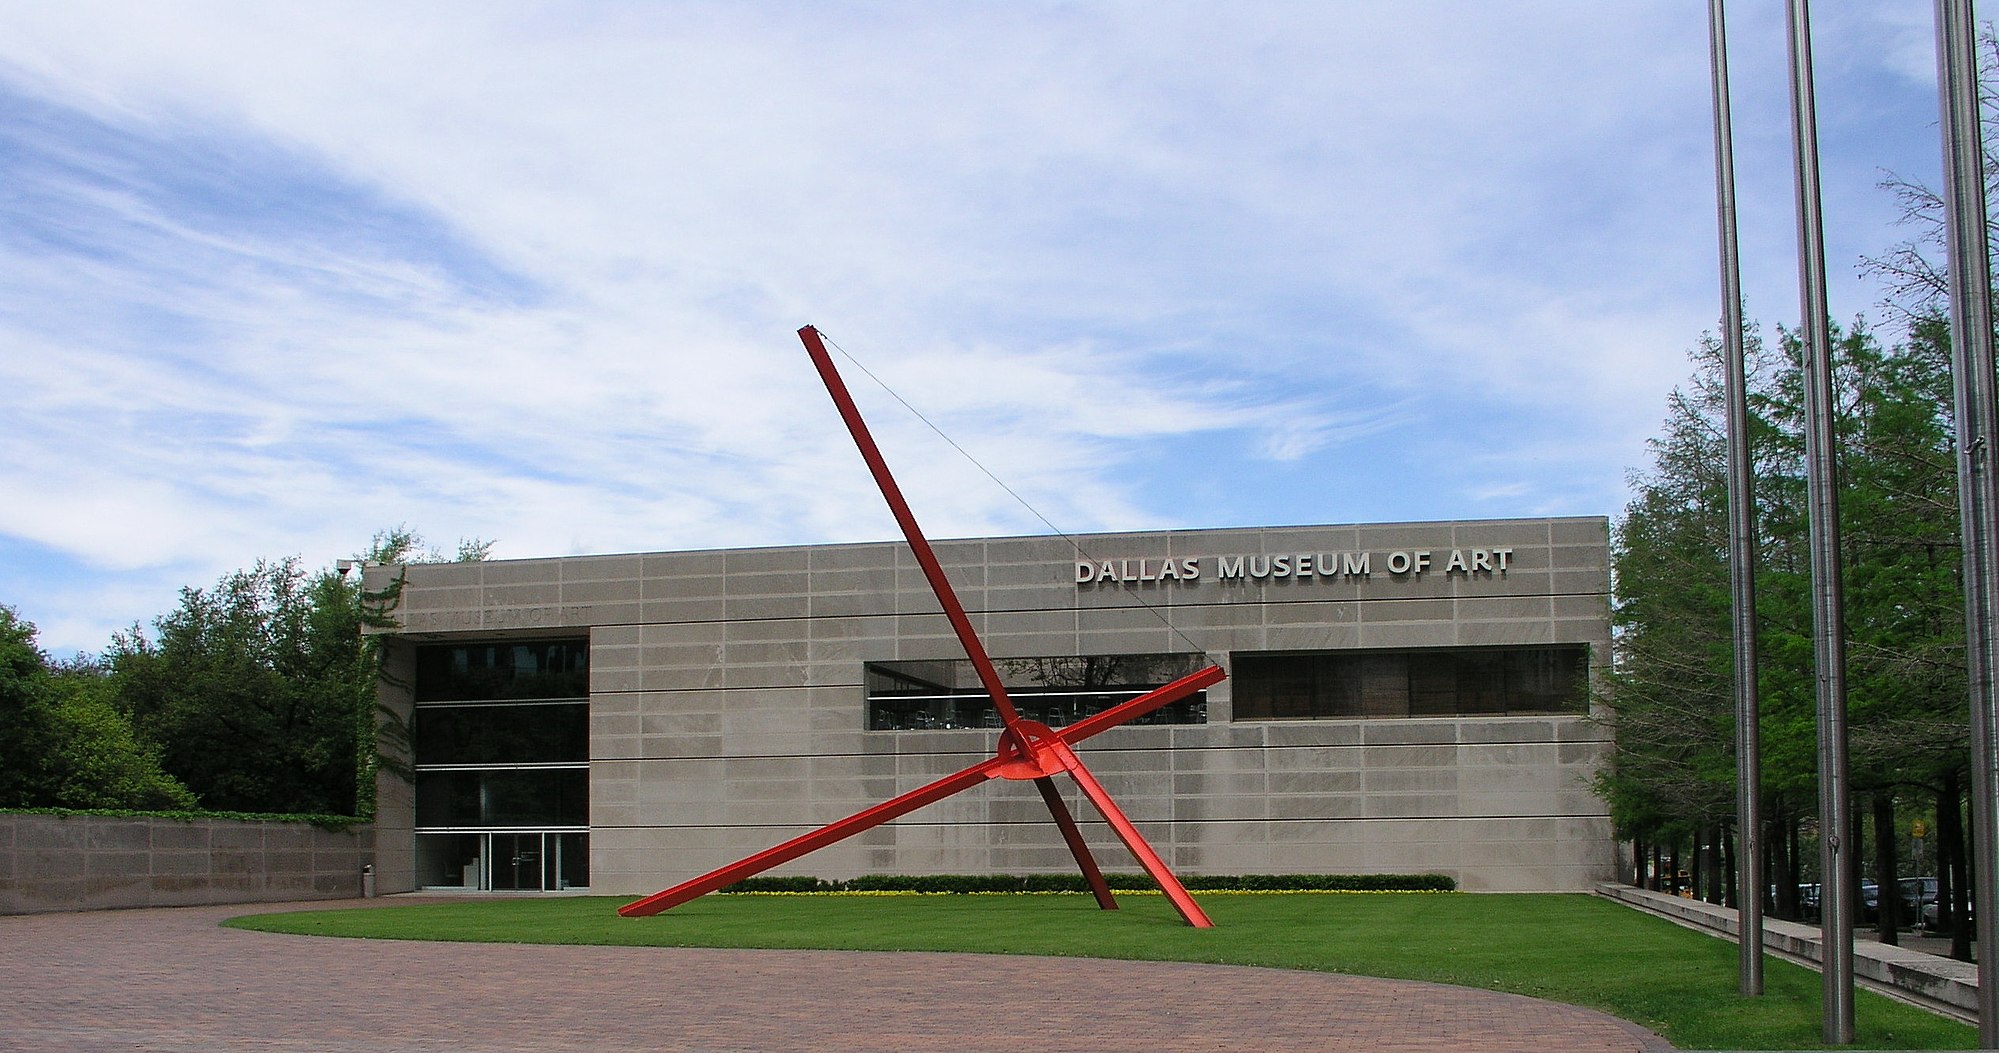 Dallas Museum of Art - Wikipedia